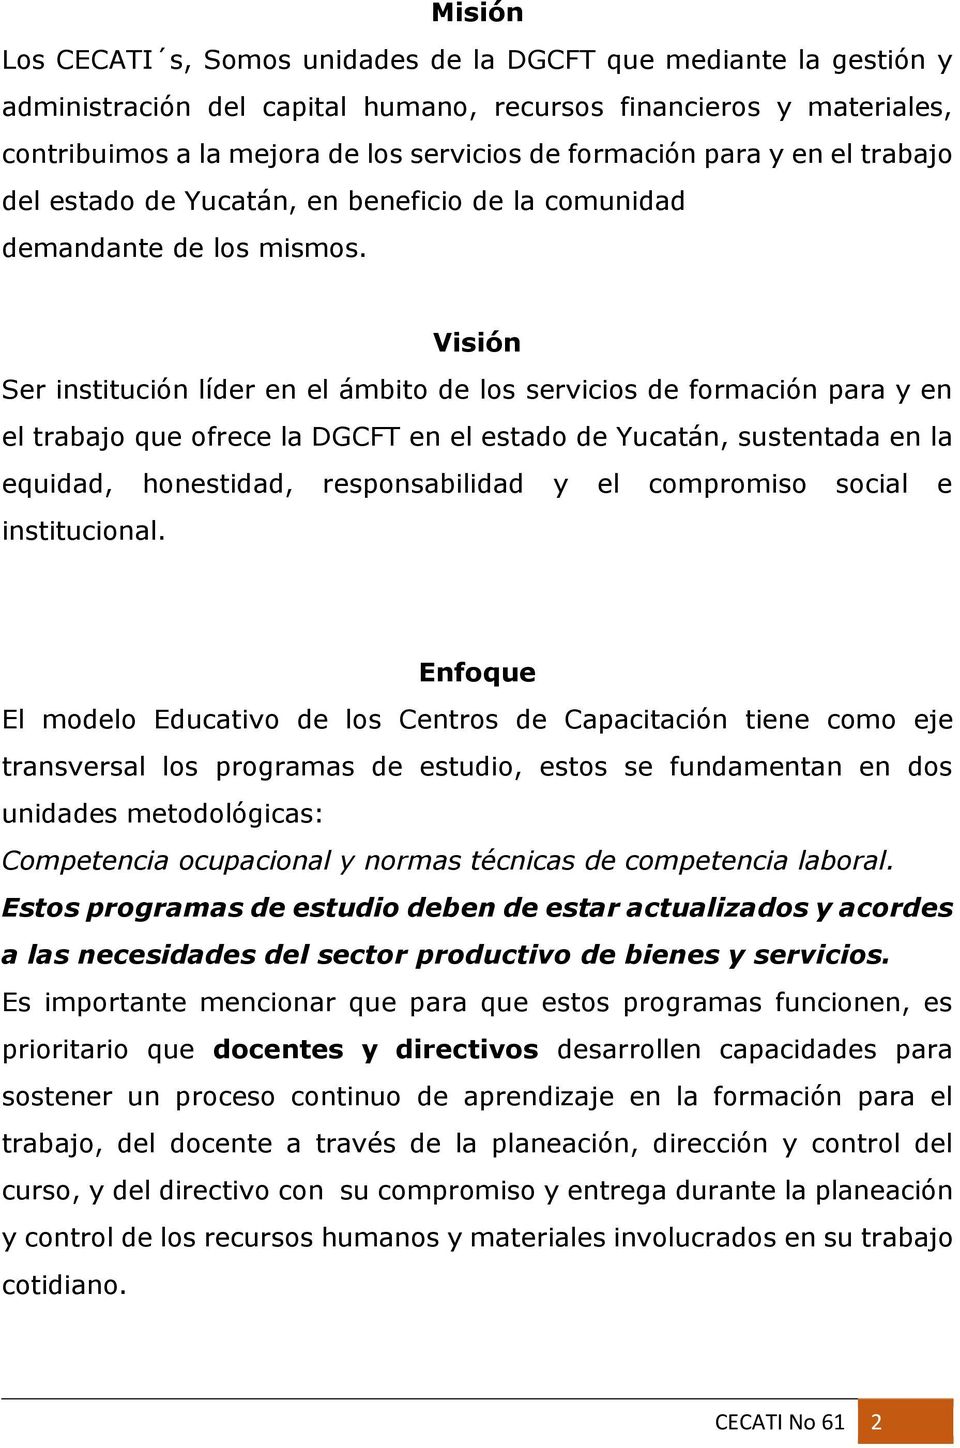 Visión Ser institución líder en el ámbito de los servicios de formación para y en el trabajo que ofrece la DGCFT en el estado de Yucatán, sustentada en la equidad, honestidad, responsabilidad y el